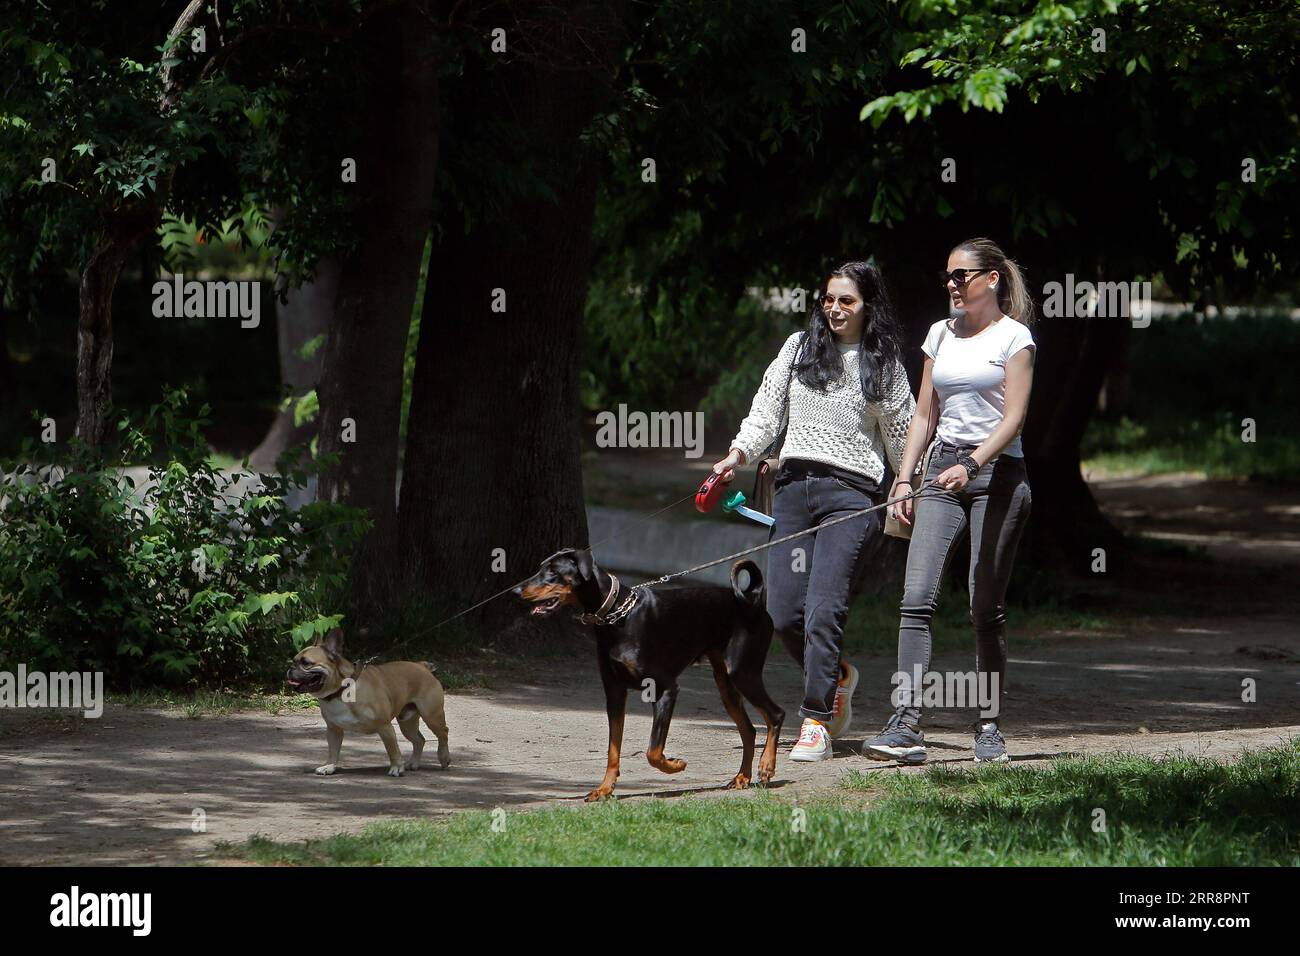 210515 -- BUKAREST, 15. Mai 2021 -- Menschen gehen ihre Hunde in einem Park in Bukarest, Rumänien, 15. Mai 2021. Der rumänische Premierminister Florin Citu sagte, die Regierung habe am Freitag beschlossen, die Coronavirus-bedingten Beschränkungen des Landes ab Samstag schrittweise zu lockern. Ab Samstag wird die nächtliche Ausgangssperre aufgehoben, und die obligatorischen Maskenvorschriften werden nur in geschlossenen öffentlichen Räumen und überfüllten öffentlichen Räumen, einschließlich Märkten, öffentlichen Verkehrsmitteln und Arbeitsplätzen, angewendet. Foto: /Xinhua ROMANIA-BUKAREST-COVID-19-EASE CristianxCristel PUBLICATIONxNOTxINxCHN Stockfoto